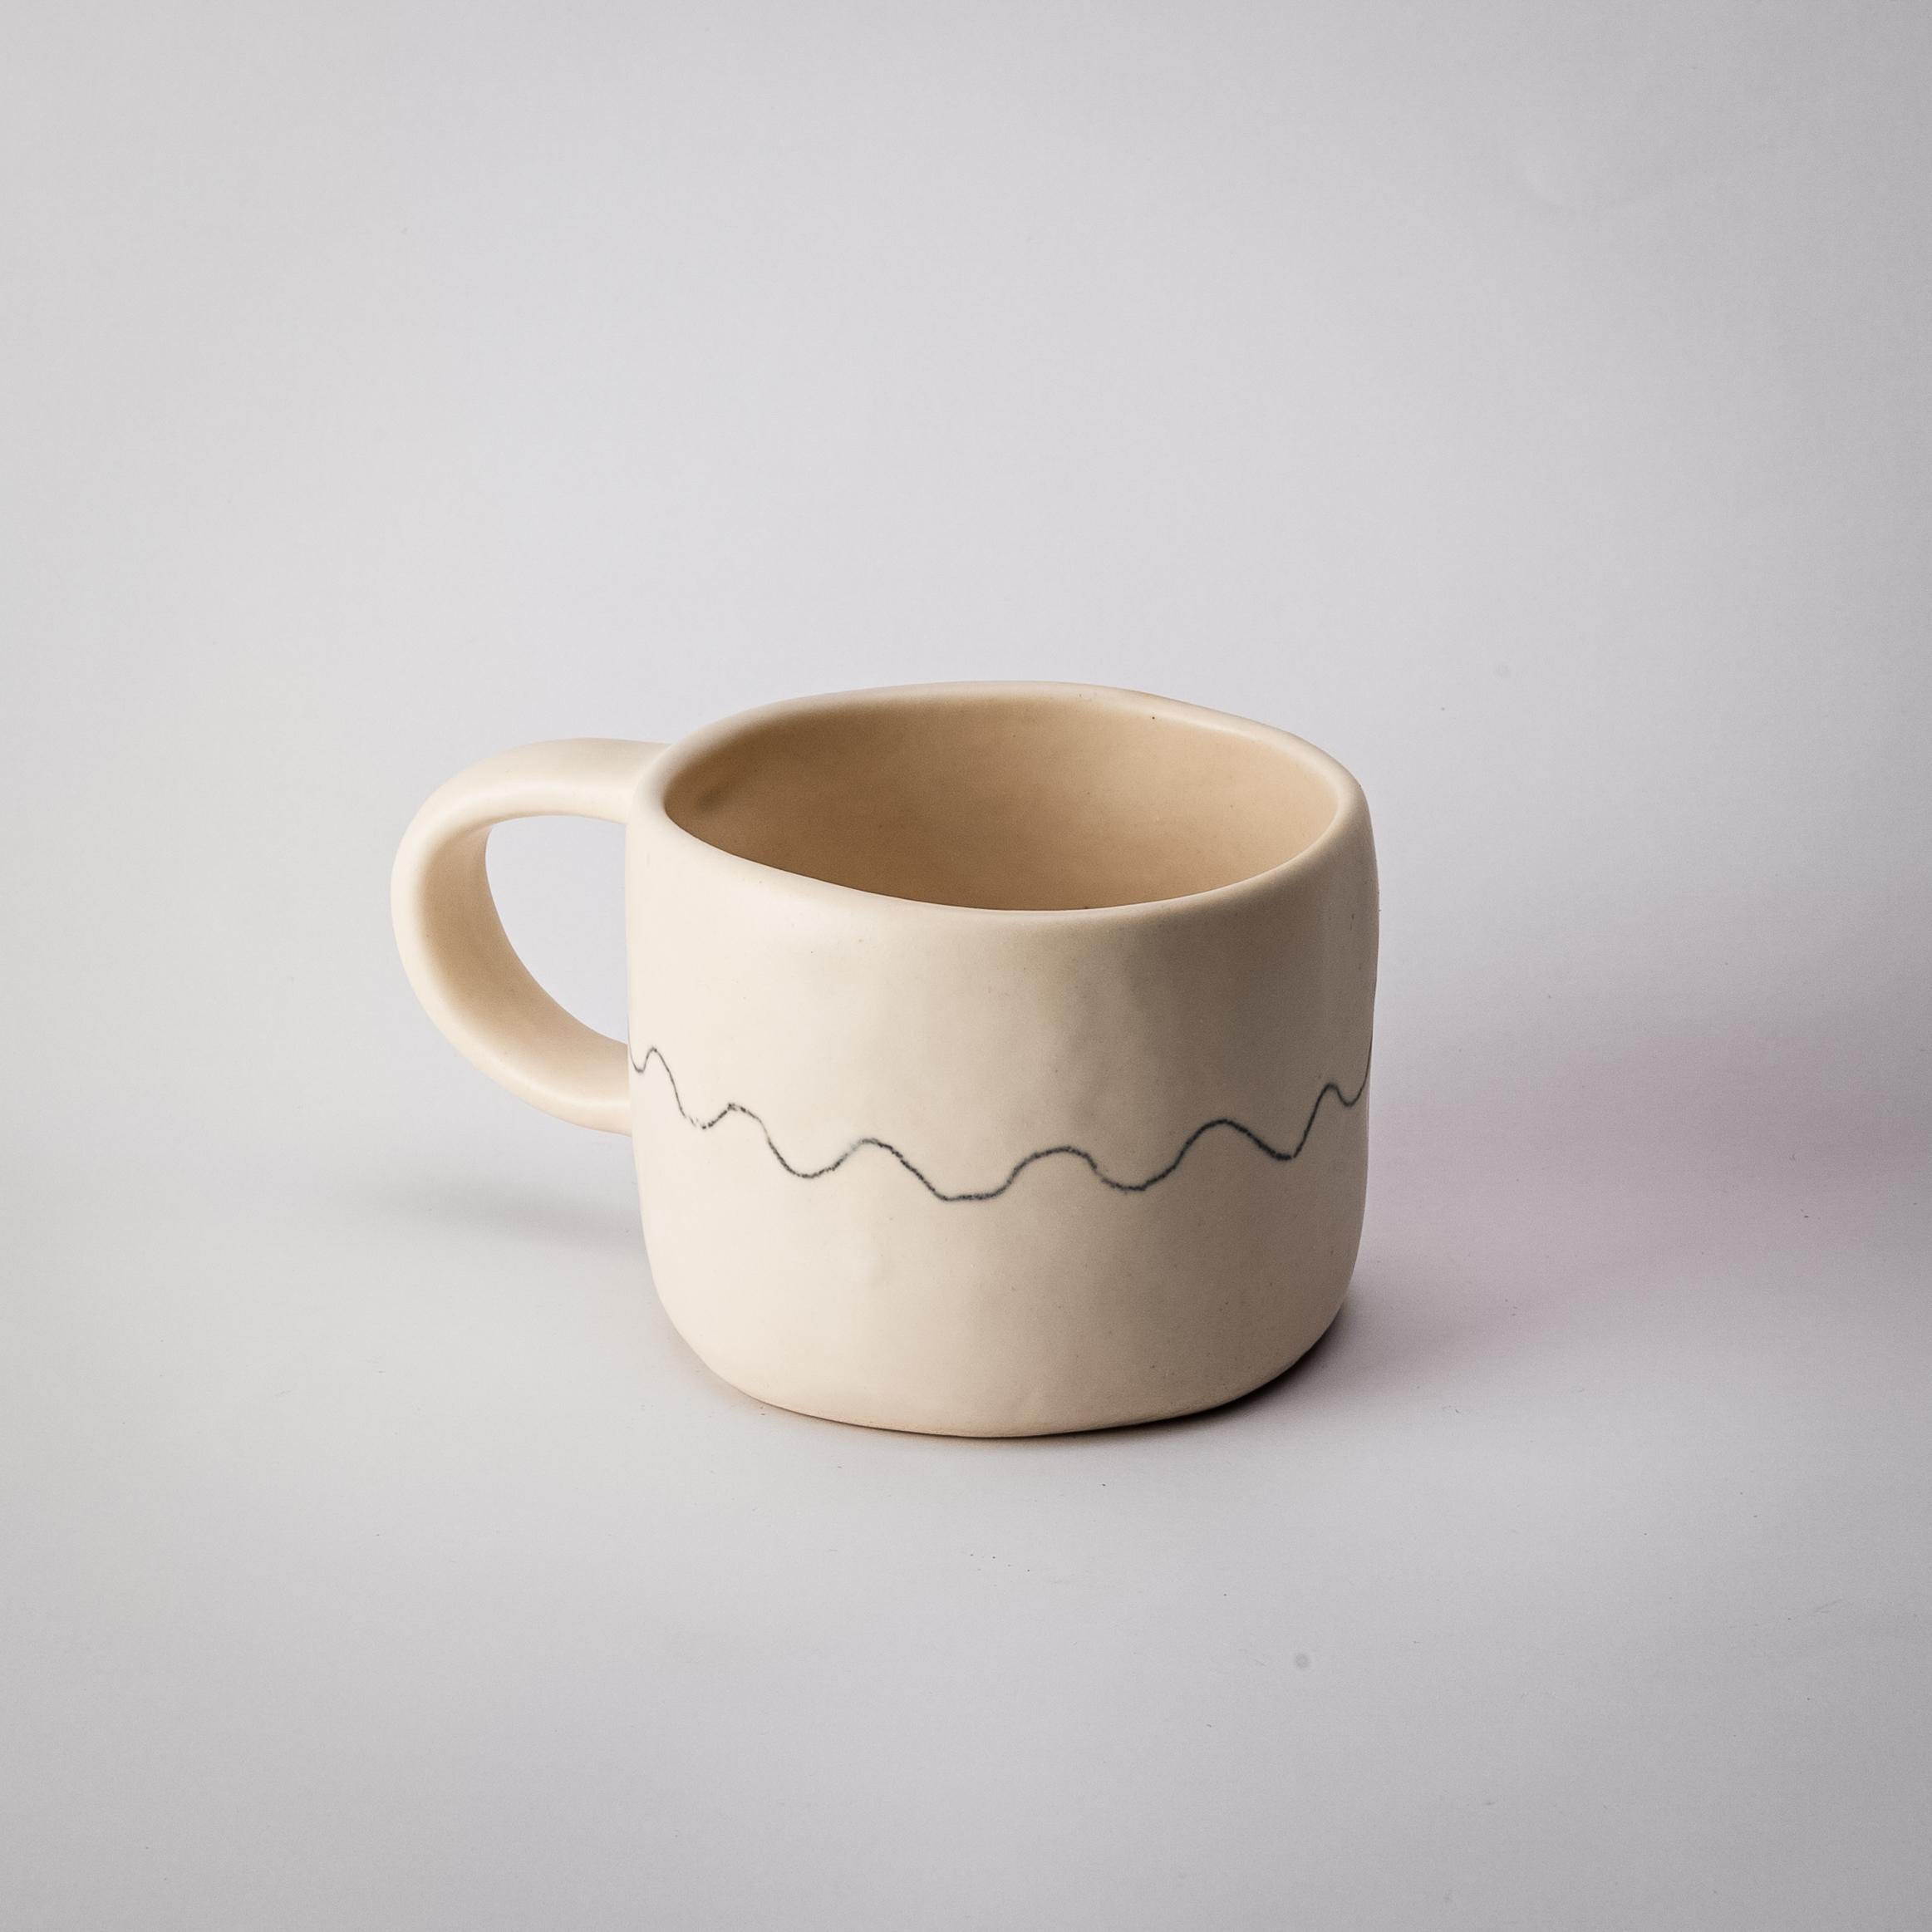 Diese handgefertigte Tasse ist perfekt für den täglichen Gebrauch, den Morgenkaffee und den Nachmittagstee. Die Keramiktasse ist von hoher Qualität und wird Ihnen viel Freude bei der Benutzung bringen. Diese Tasse wird Ihre Stimmung beim